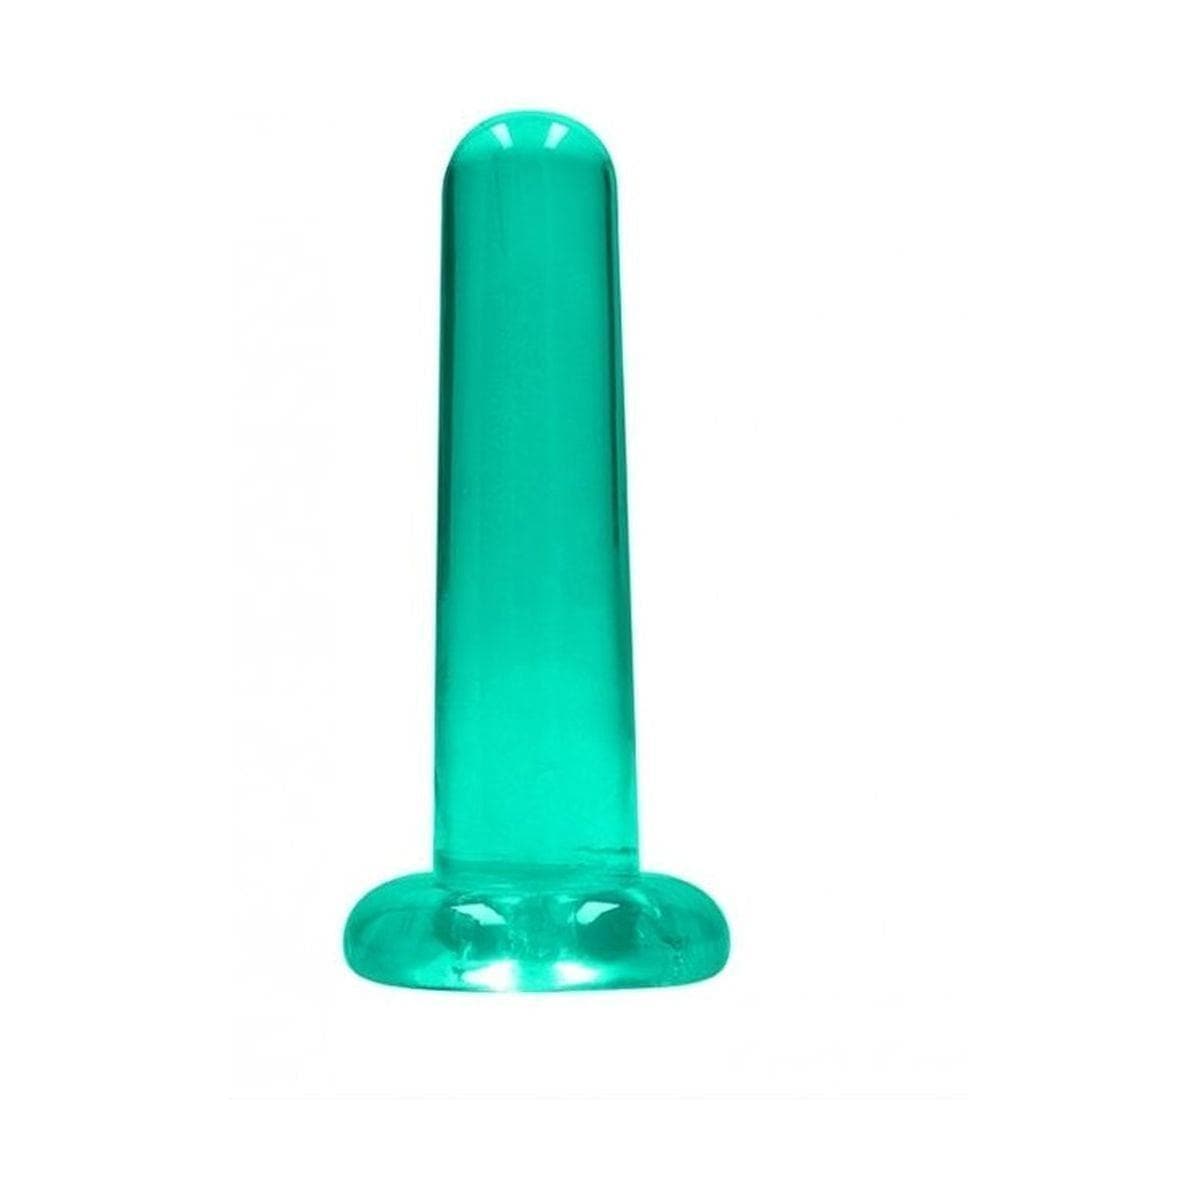 Dildo RealRock Liso Crystal Clear, 13.5cm Ø3cm  Perola Sexshop Almada Verde  